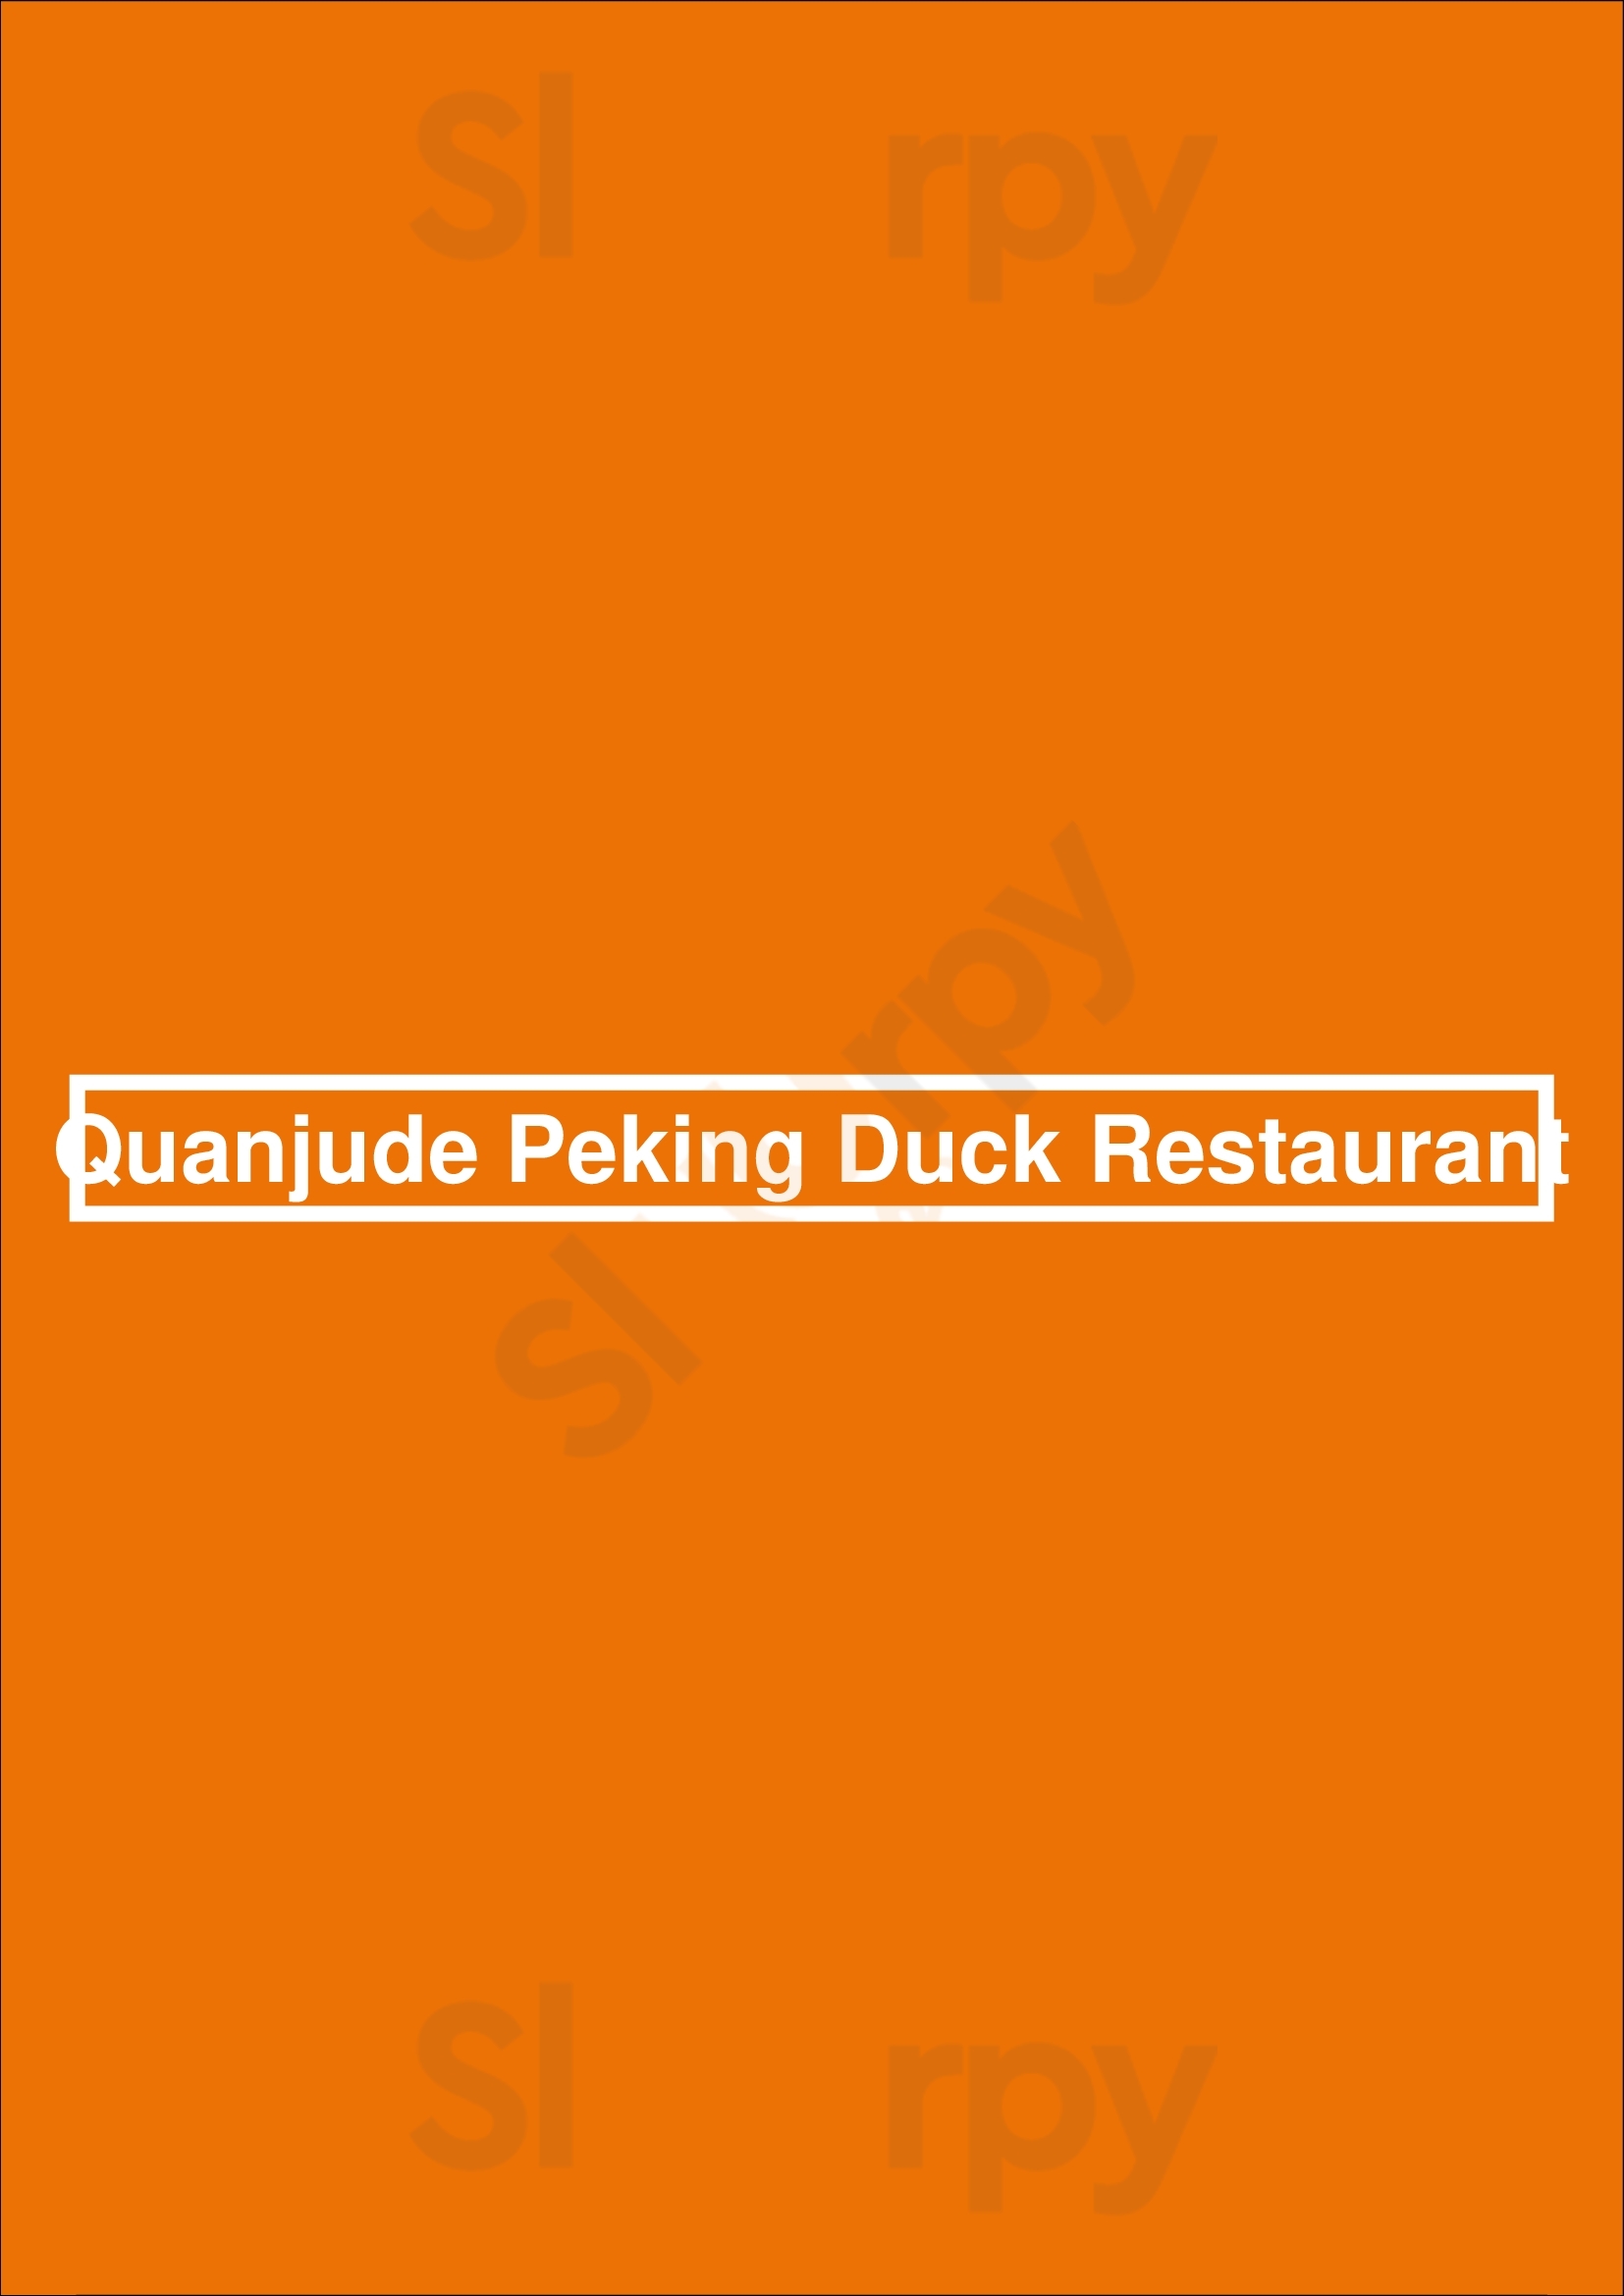 Quanjude Peking Duck Restaurant Melbourne Menu - 1